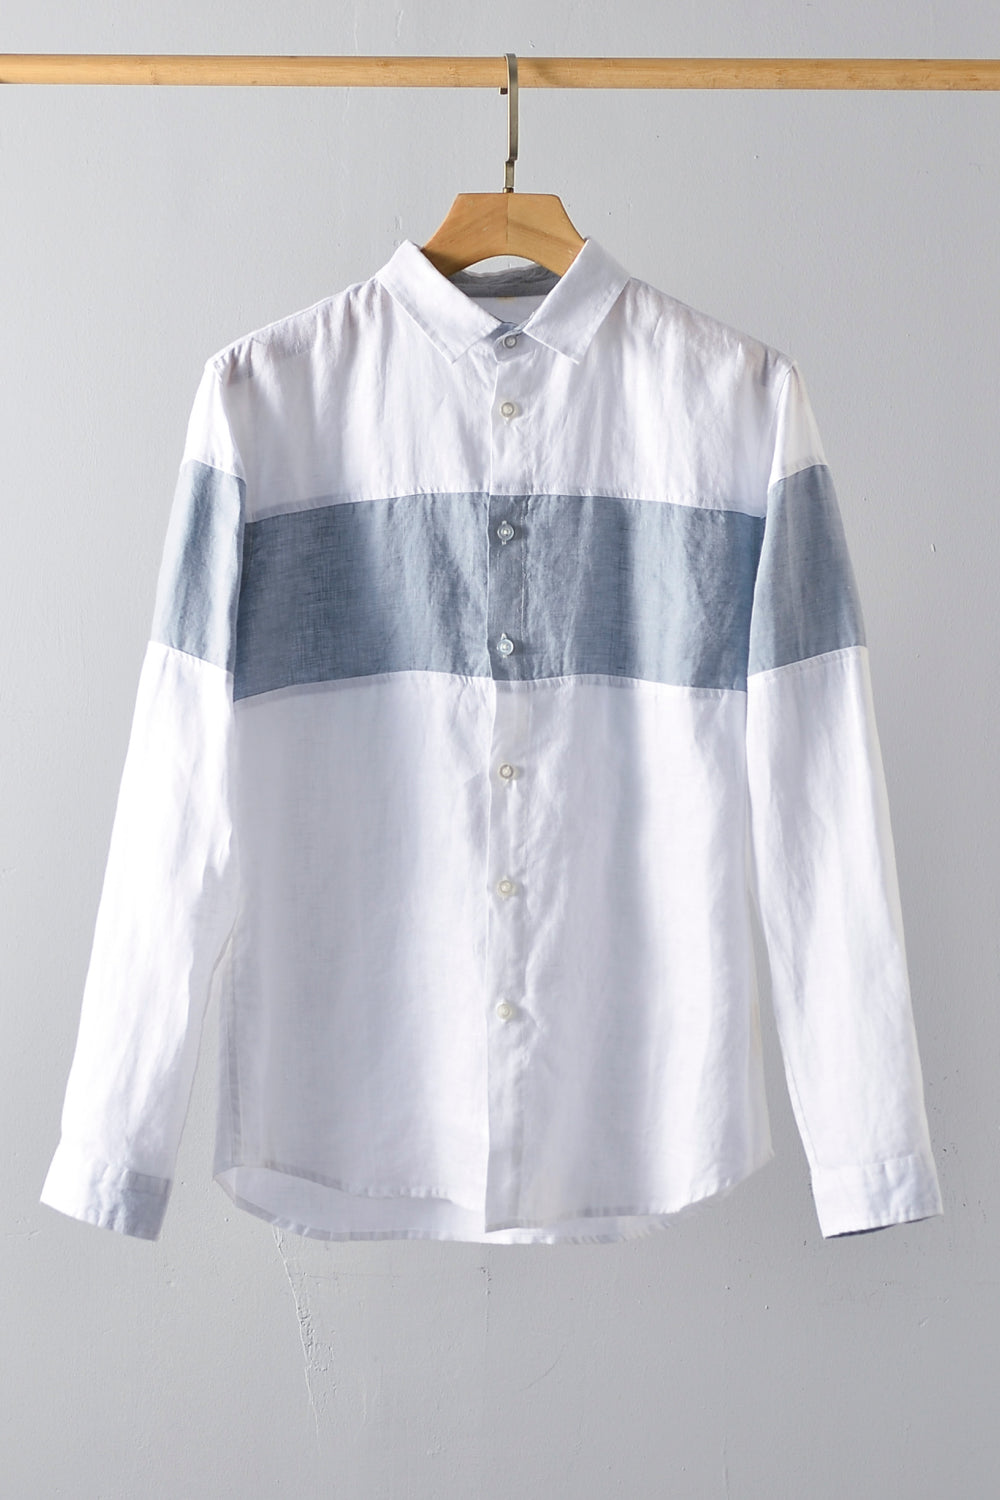 Buttoned Collared Neck Short Sleeve Linen Shirt_0